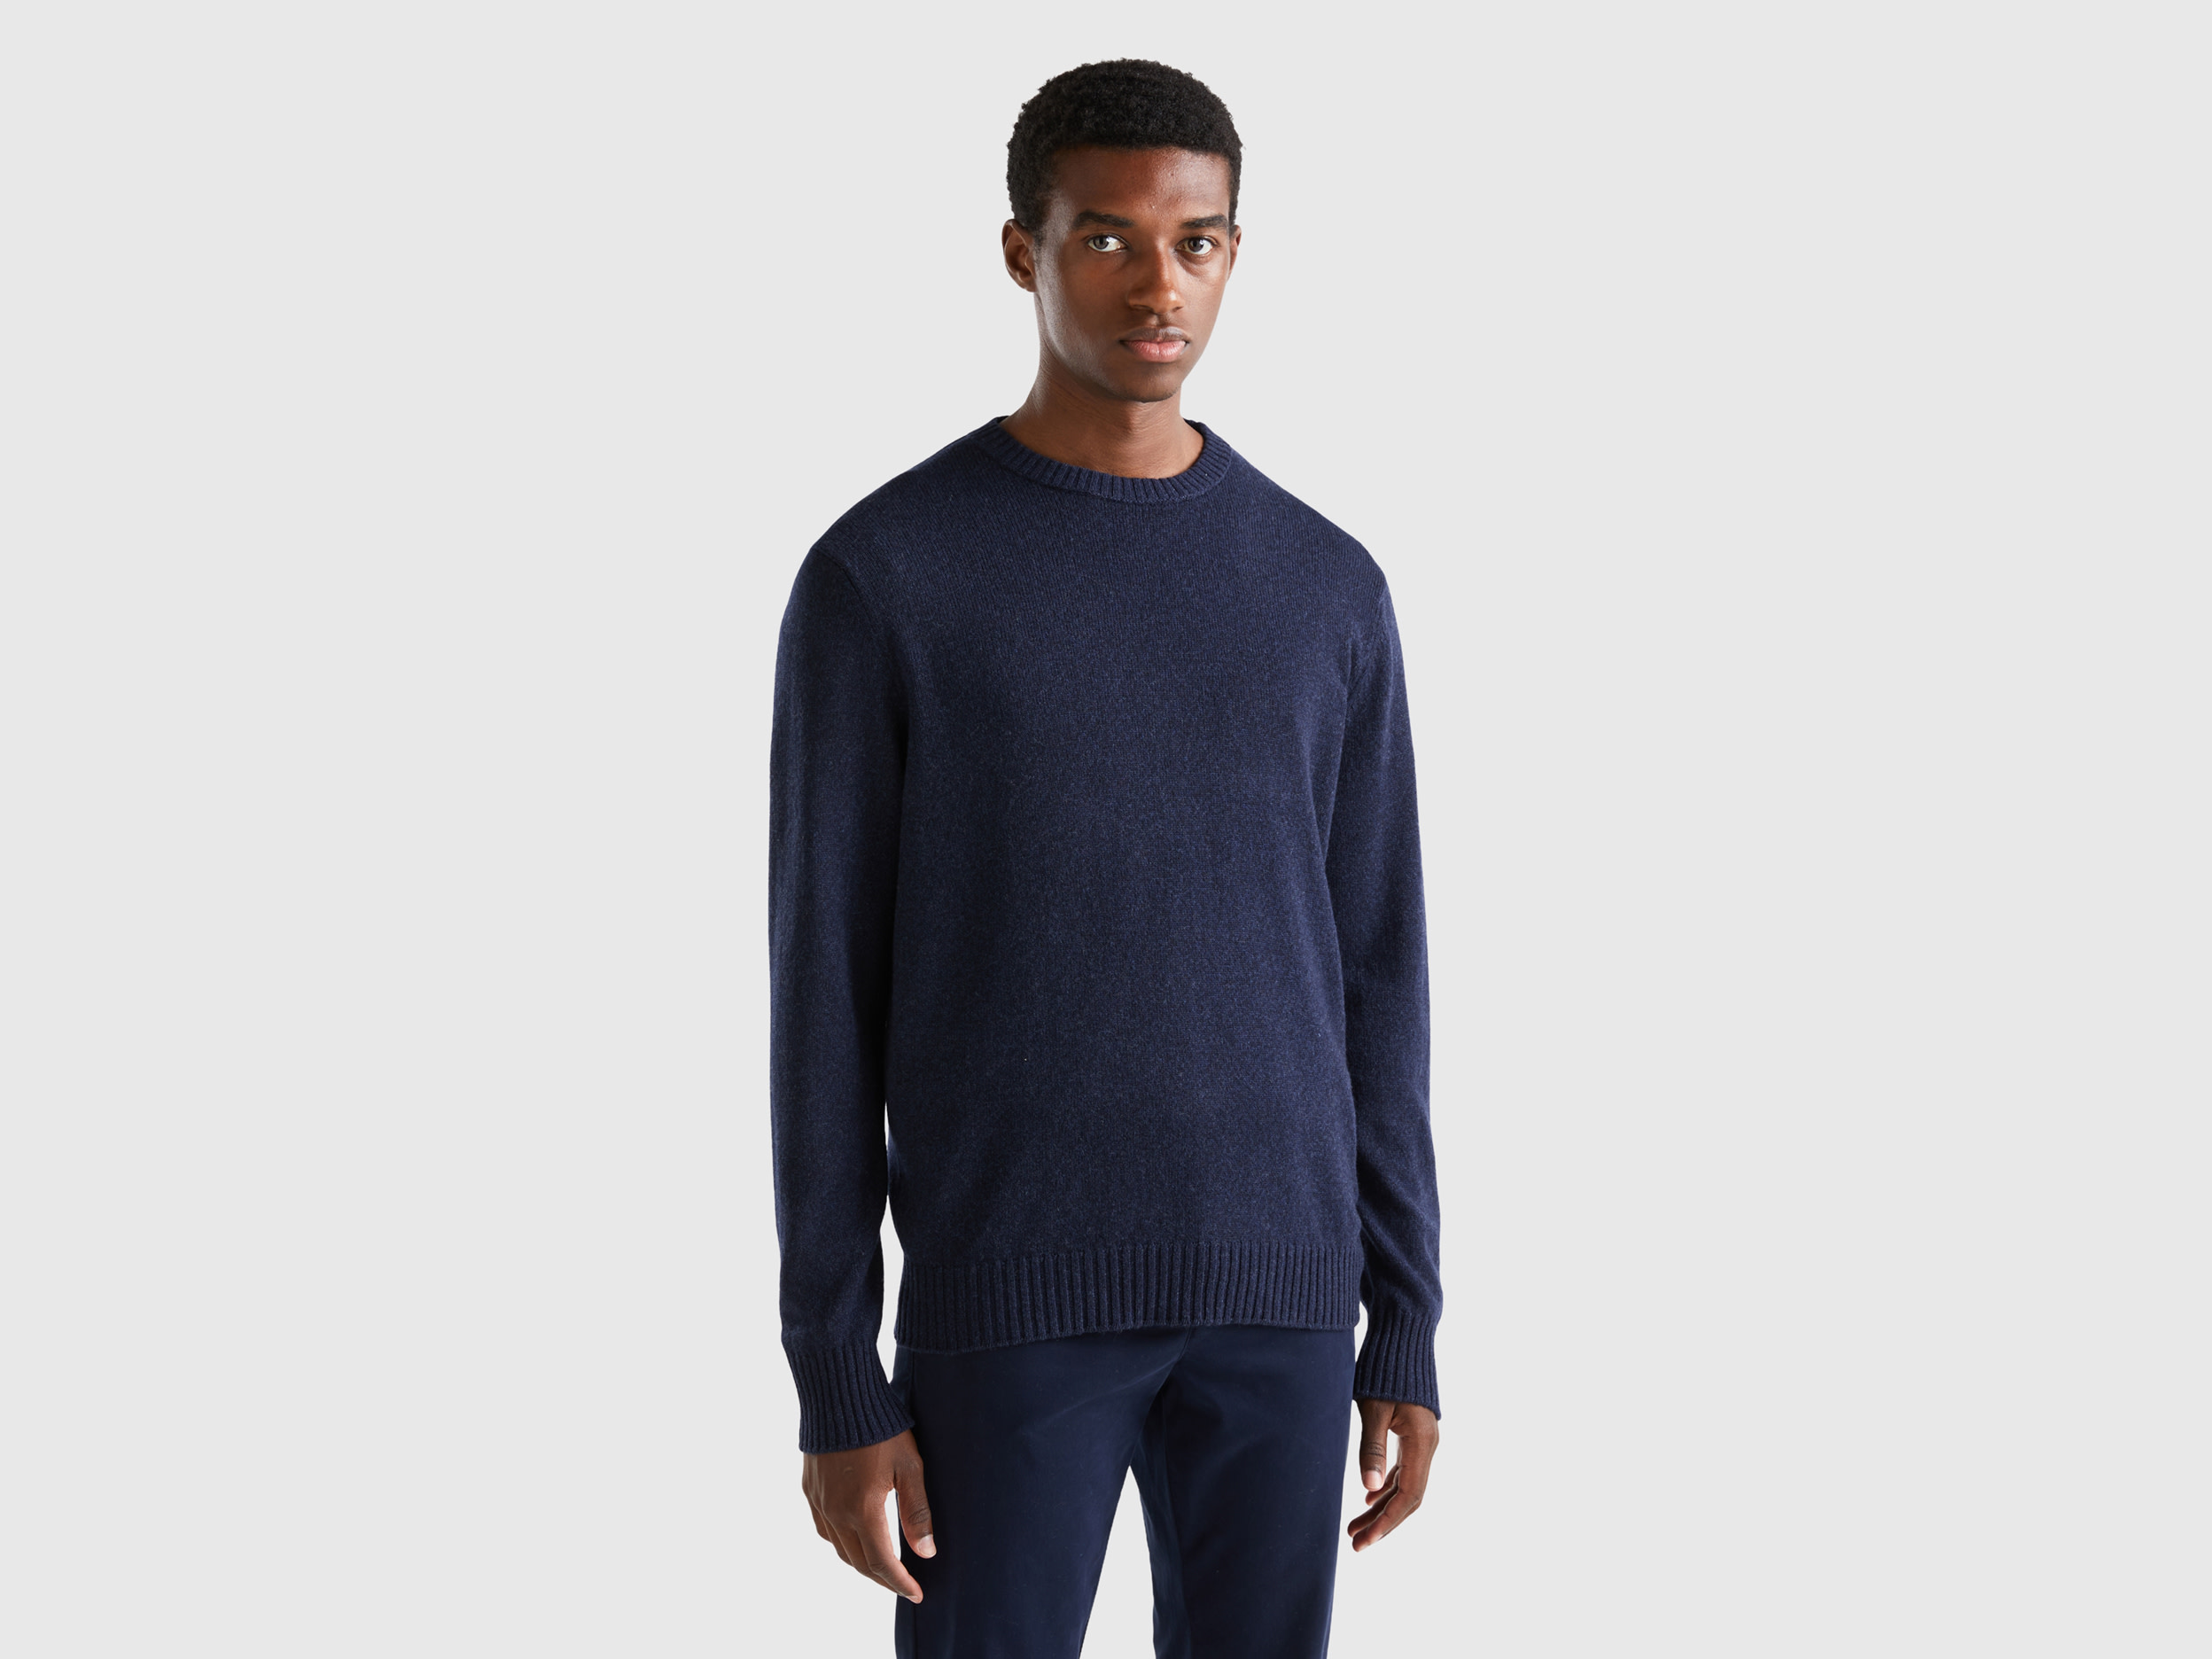 Benetton, Crew Neck Sweater In Cashmere And Wool Blend, size XXL, Dark Blue, Men